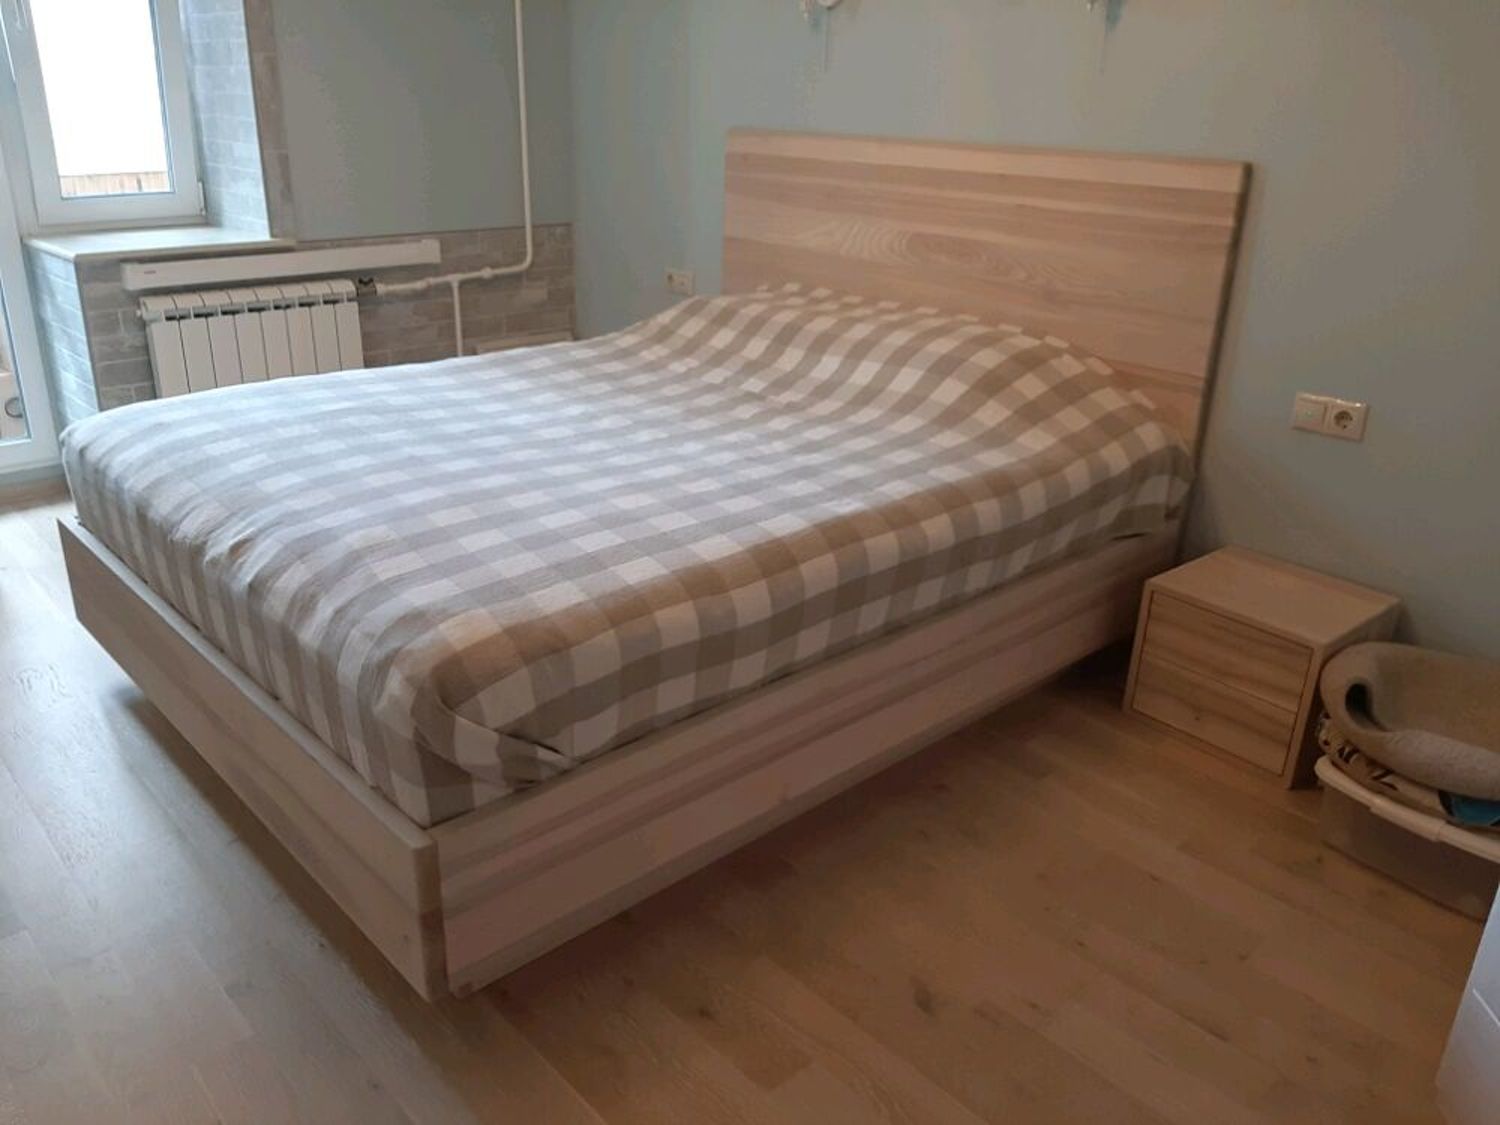 Фото №1 к отзыву покупателя Natalia о товаре Кровати: Кровать на заказ из массива натурального дерева (ясень)